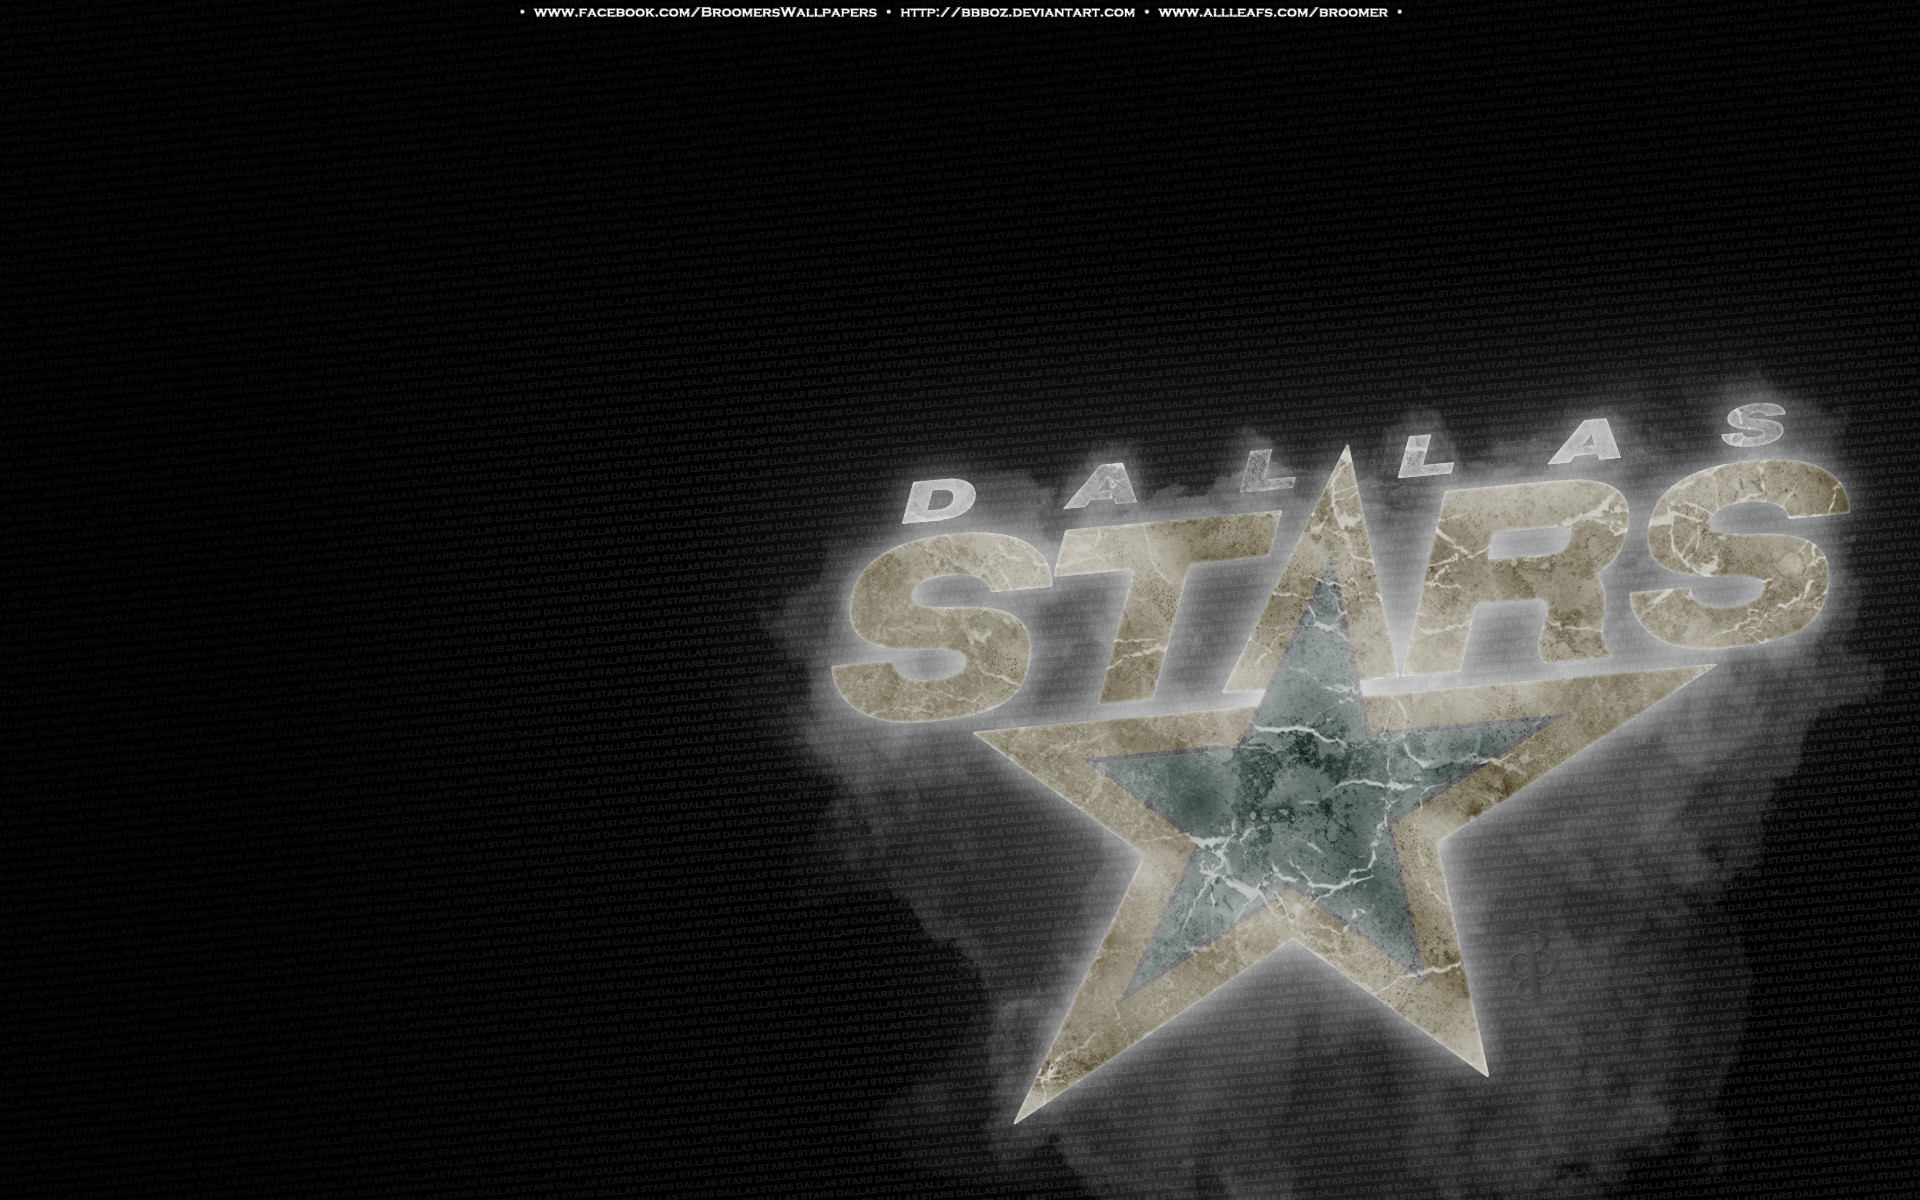 57+] Dallas Stars Wallpapers - WallpaperSafari